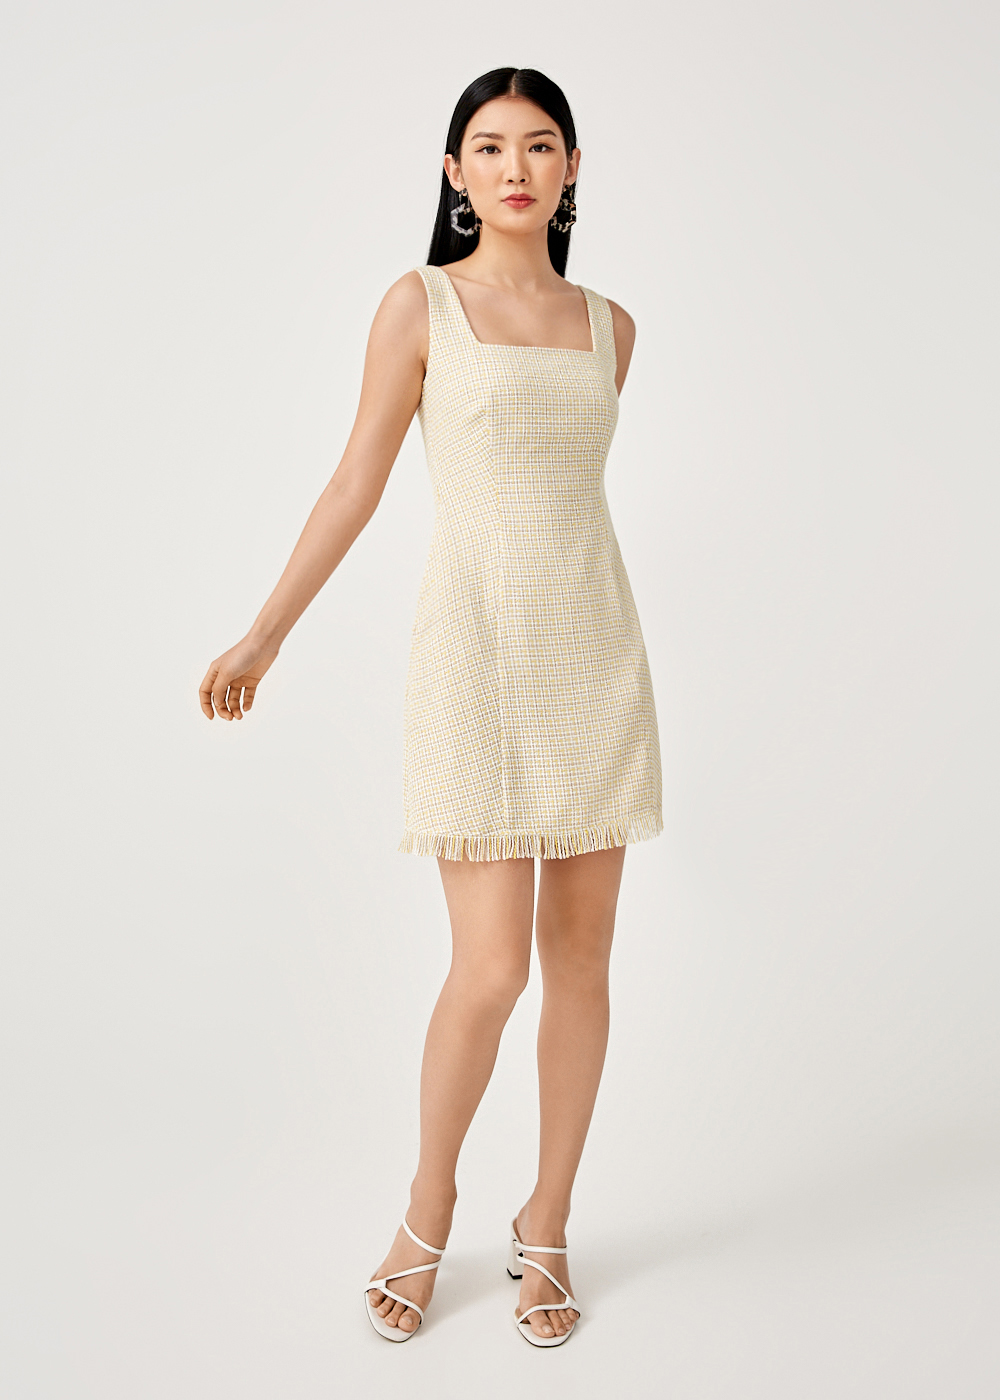 Buy Leia Tweed A-line Mini Dress @ Love, Bonito Malaysia | Shop 